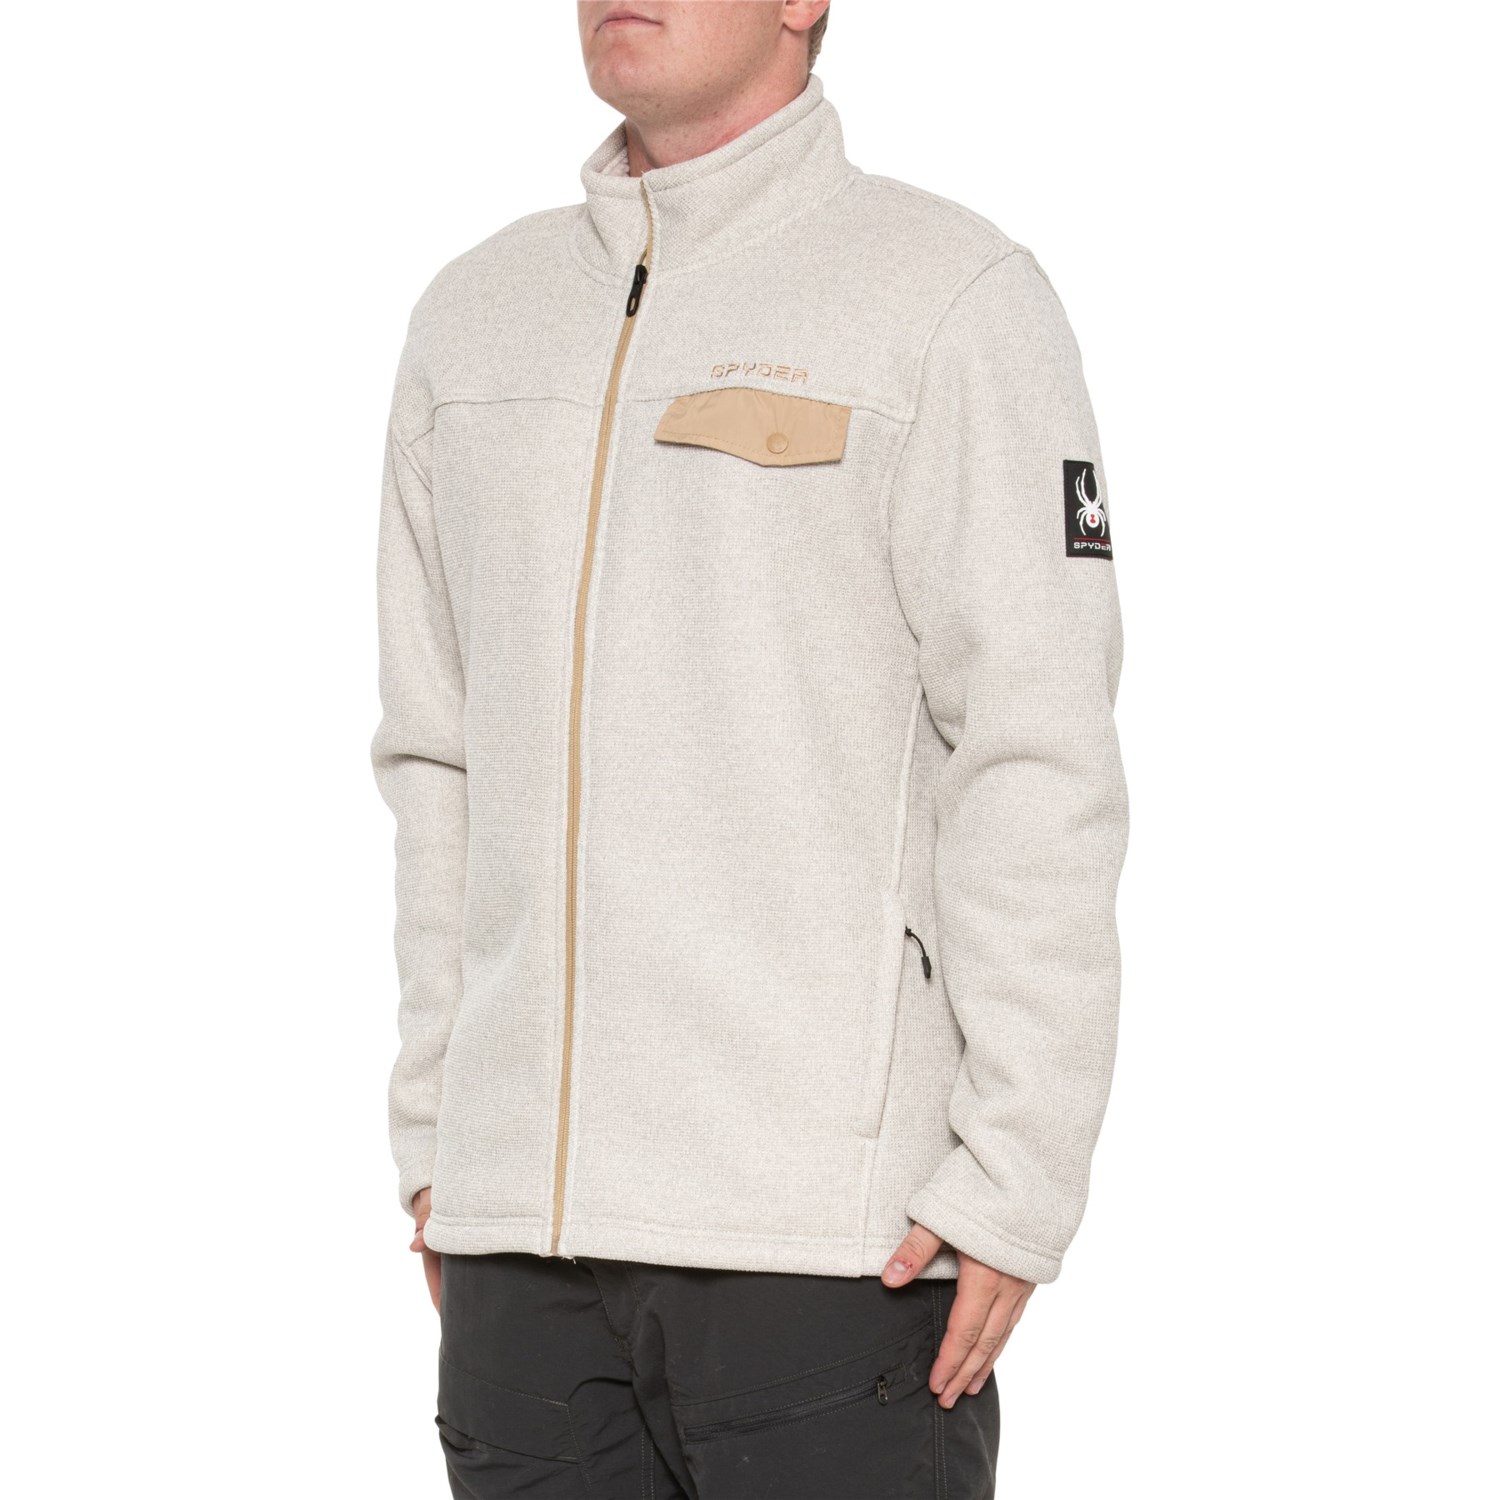 Spyder Expo Sweater Fleece Jacket - Full Zip